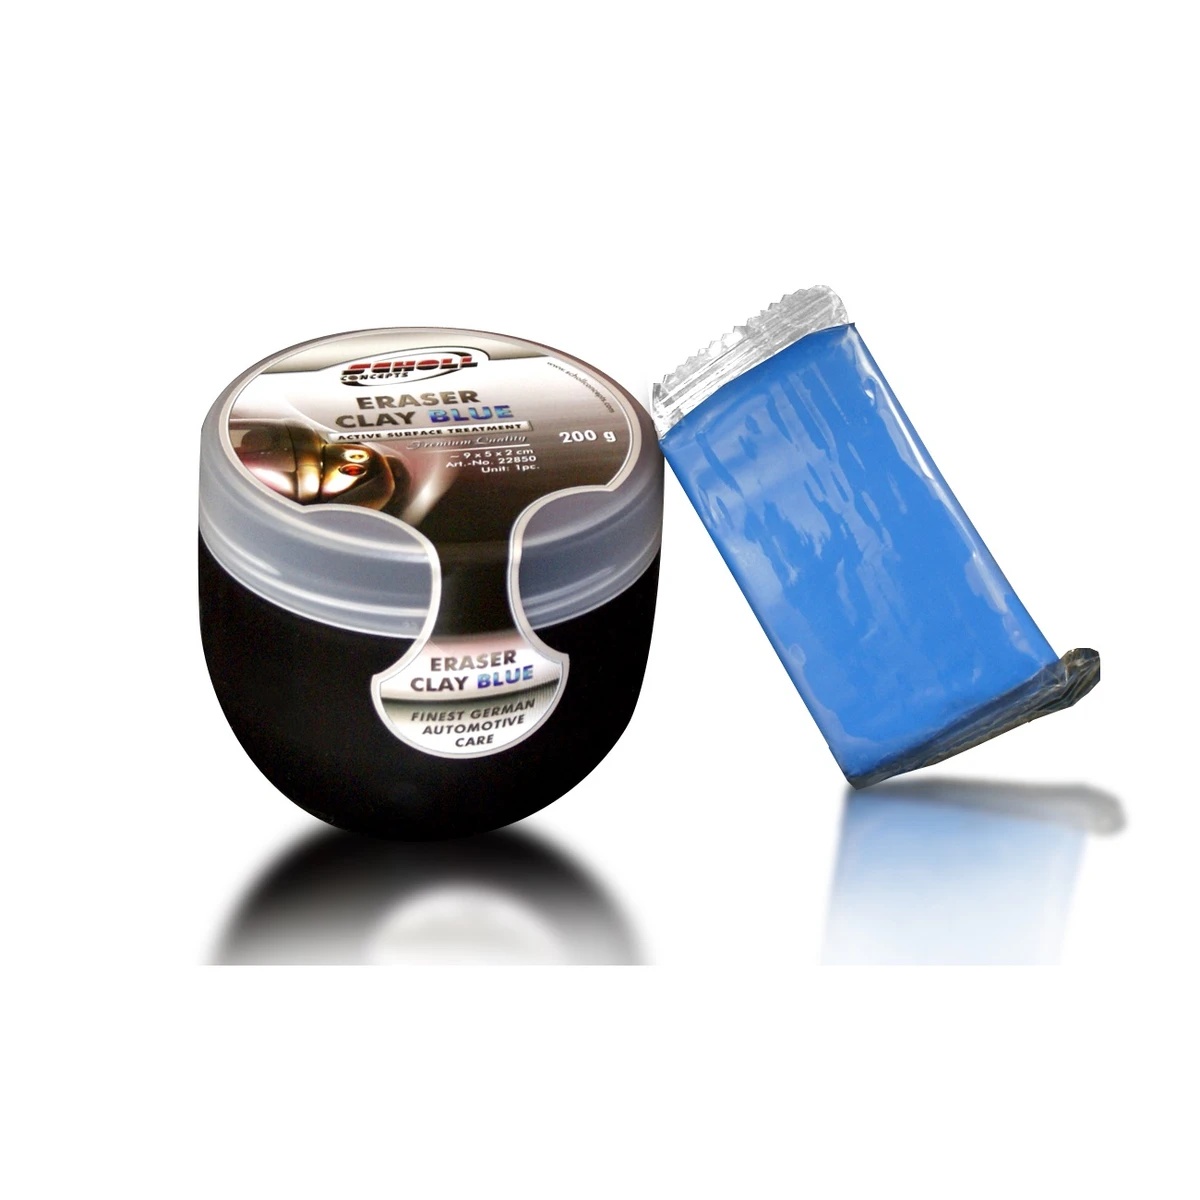 [22850] Eraser Clay Blue 200g Barre d'argile professionnelle Medium - Scholl Concepts (Barre 200g + Boite)